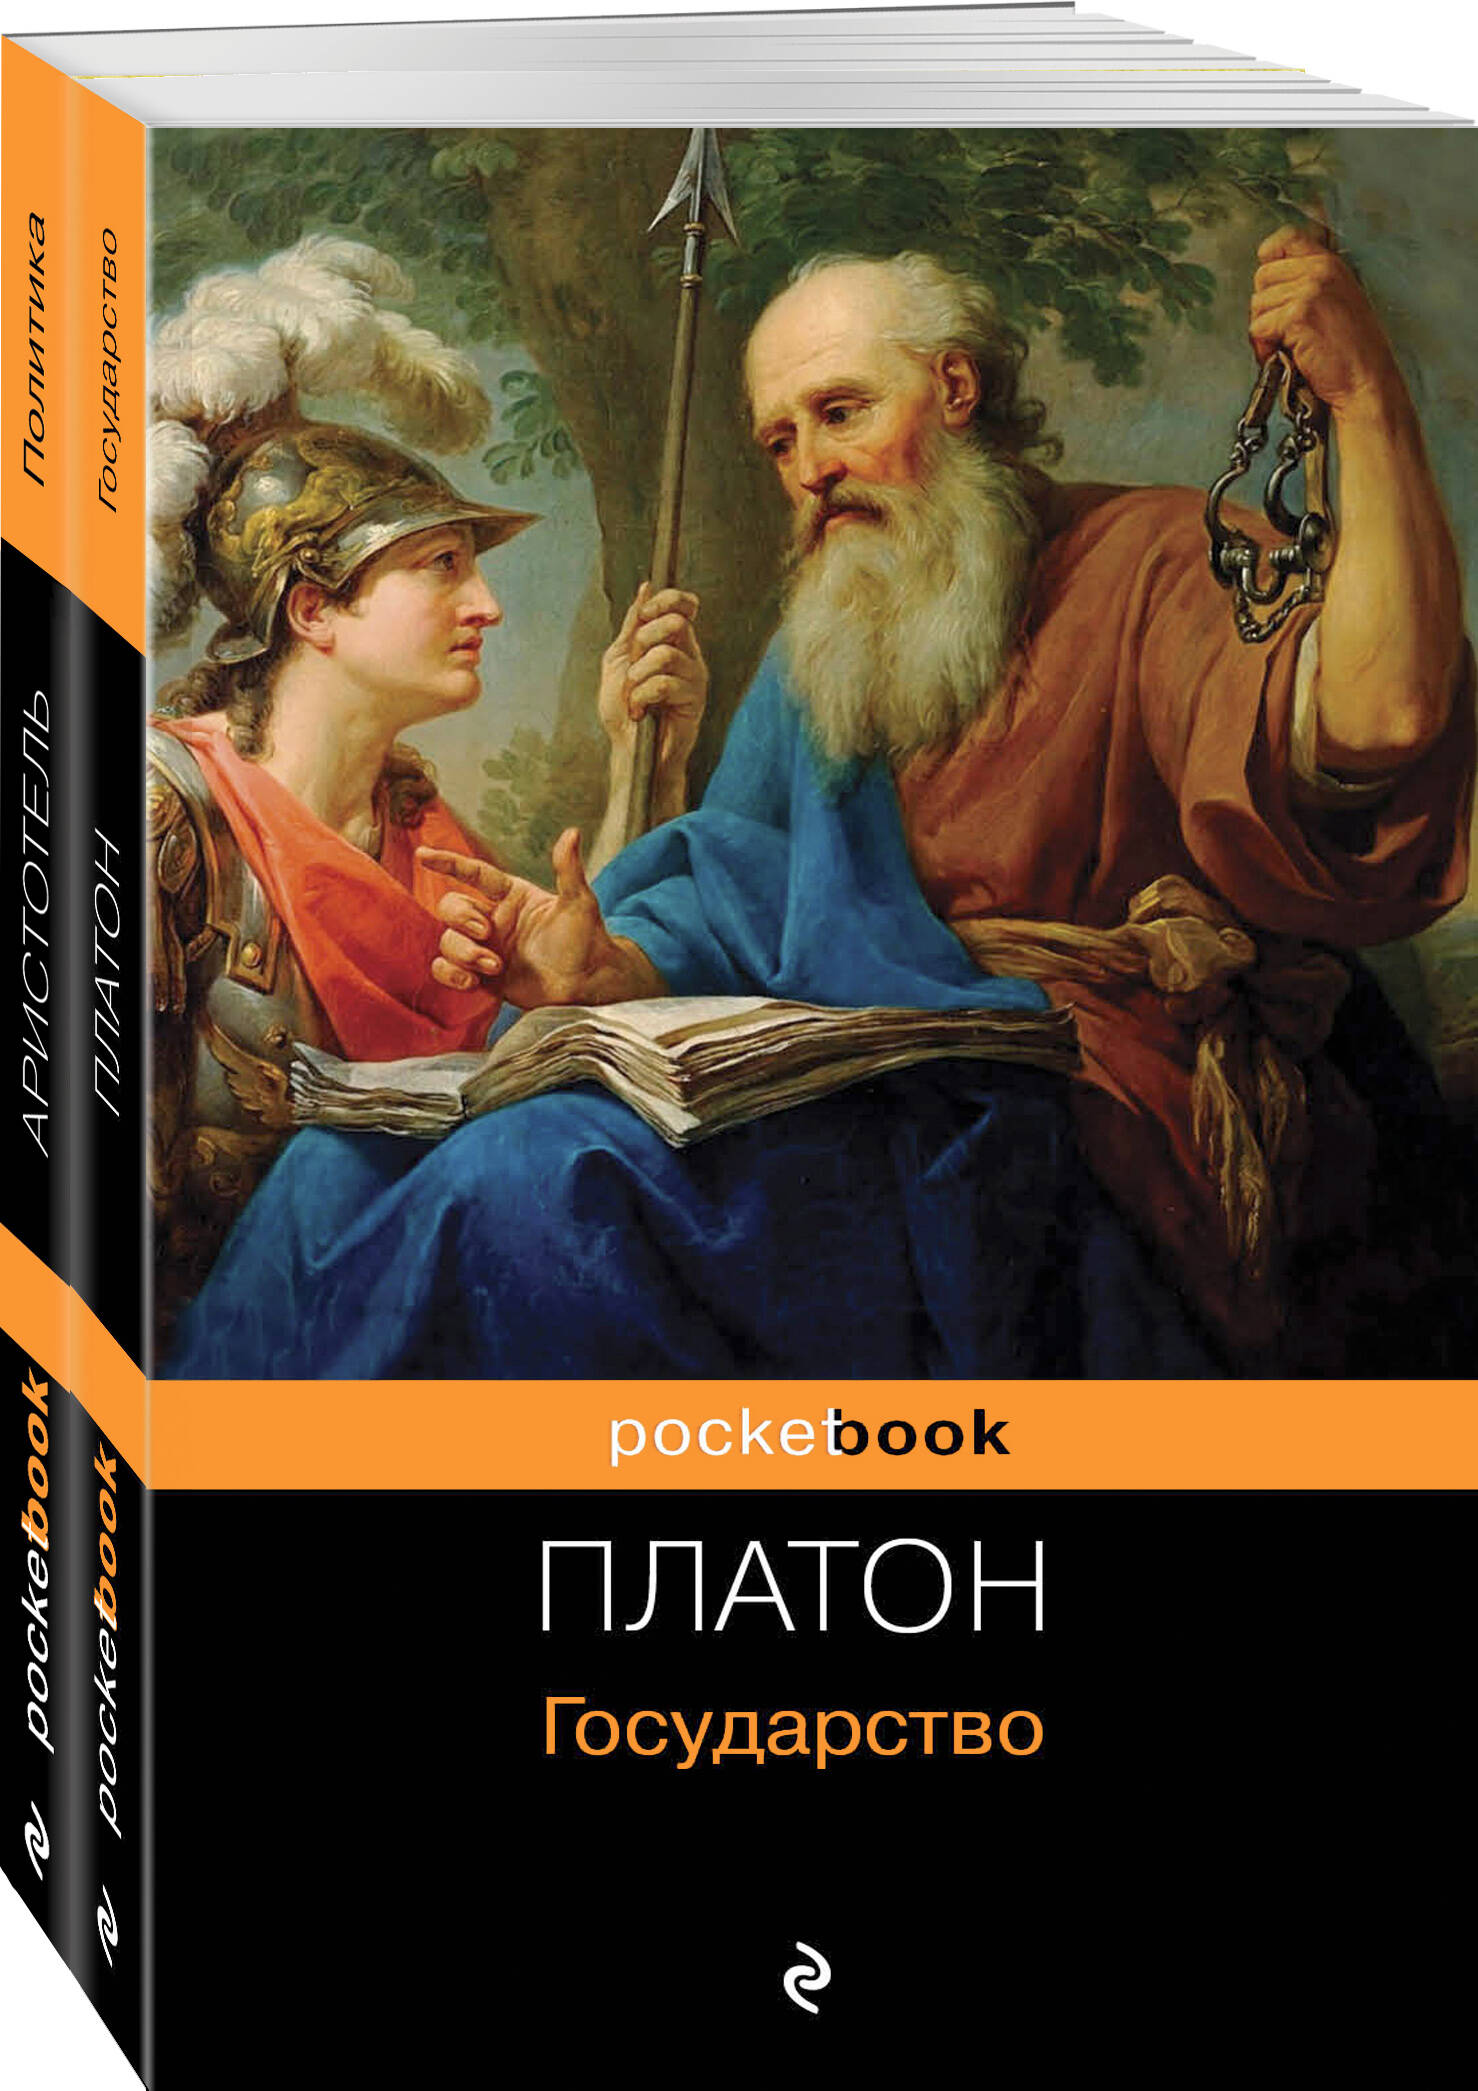 Аристотель, Платон - Все о государстве и политике: Государство. Политика (комплект из 2 книг)